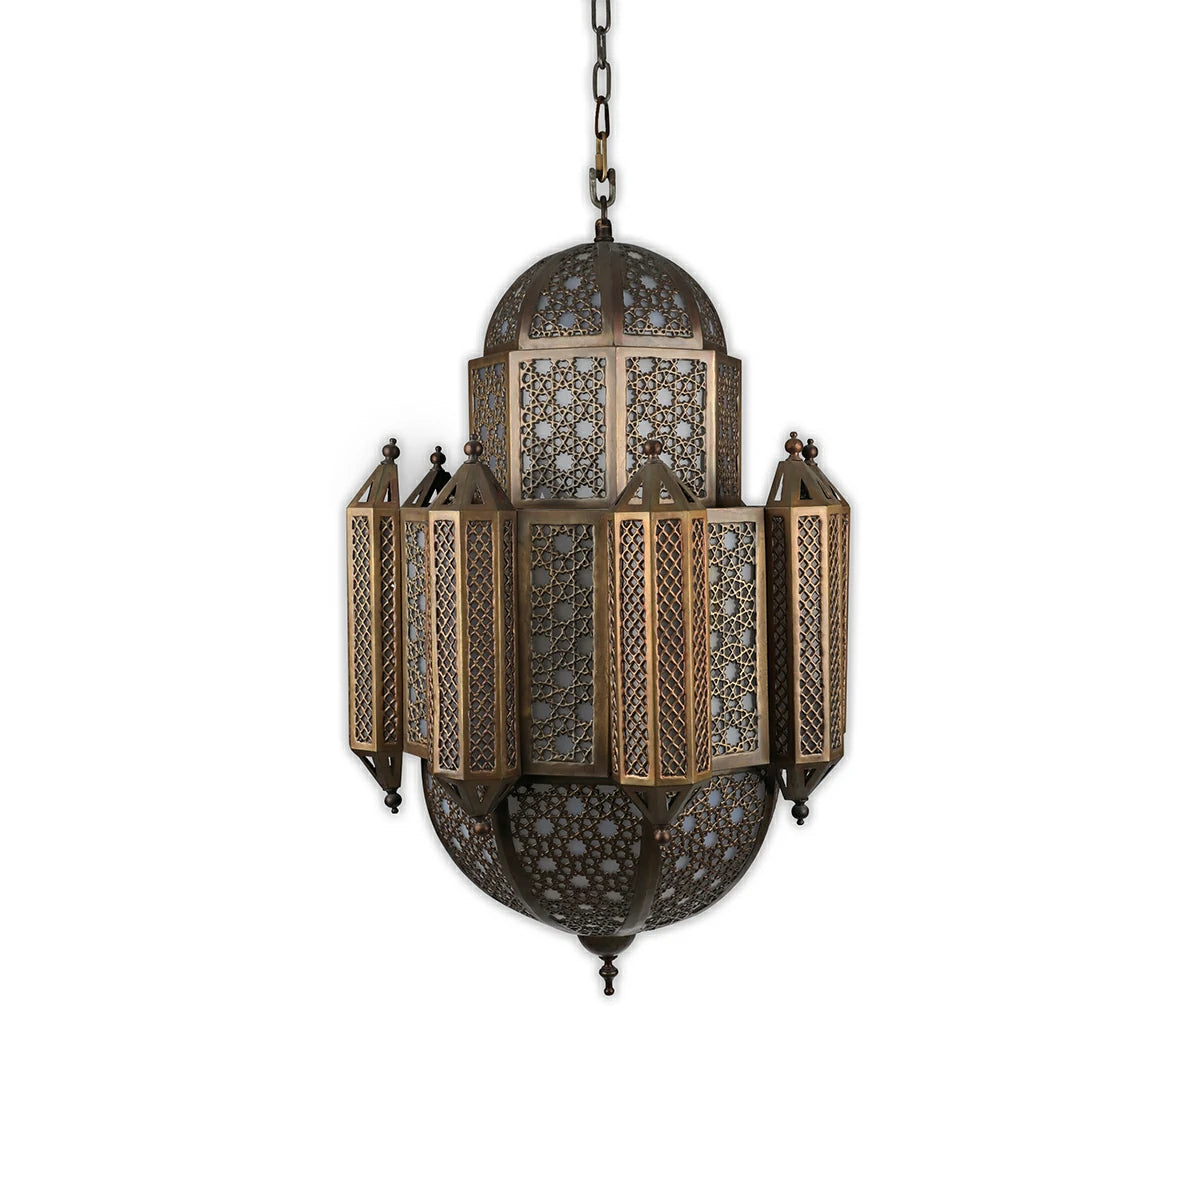 ثريا نحاسية عربية تقليدية: قطعة إضاءة فريدة من نوعها تضيف لمسة من الشرق الأوسط إلى منزلك